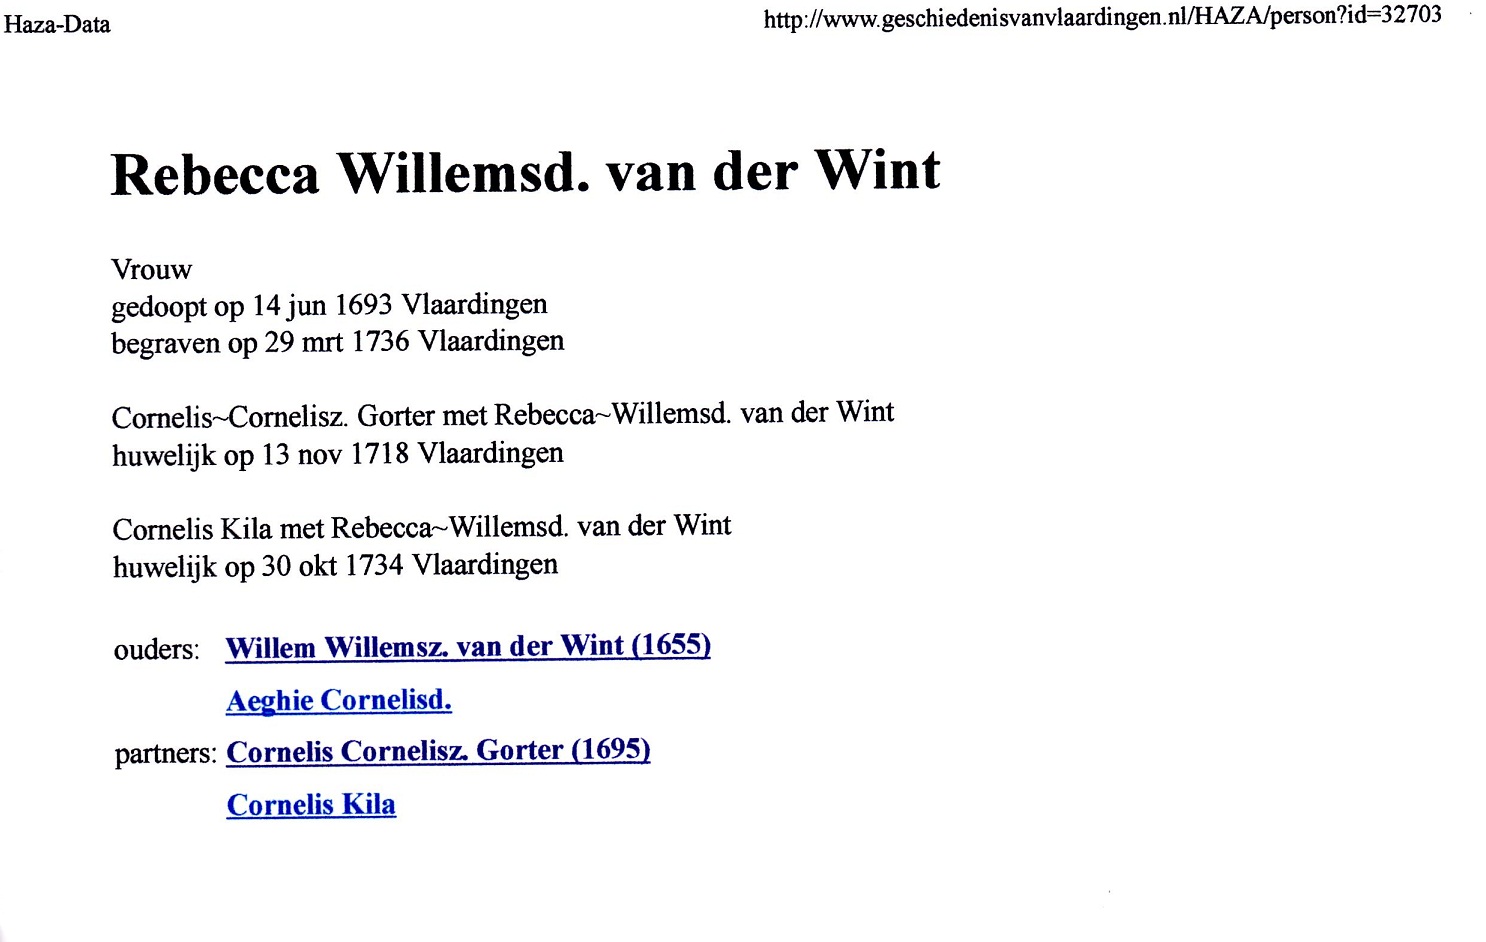 1693-06-14 Rebecca Willemsd van der Wint